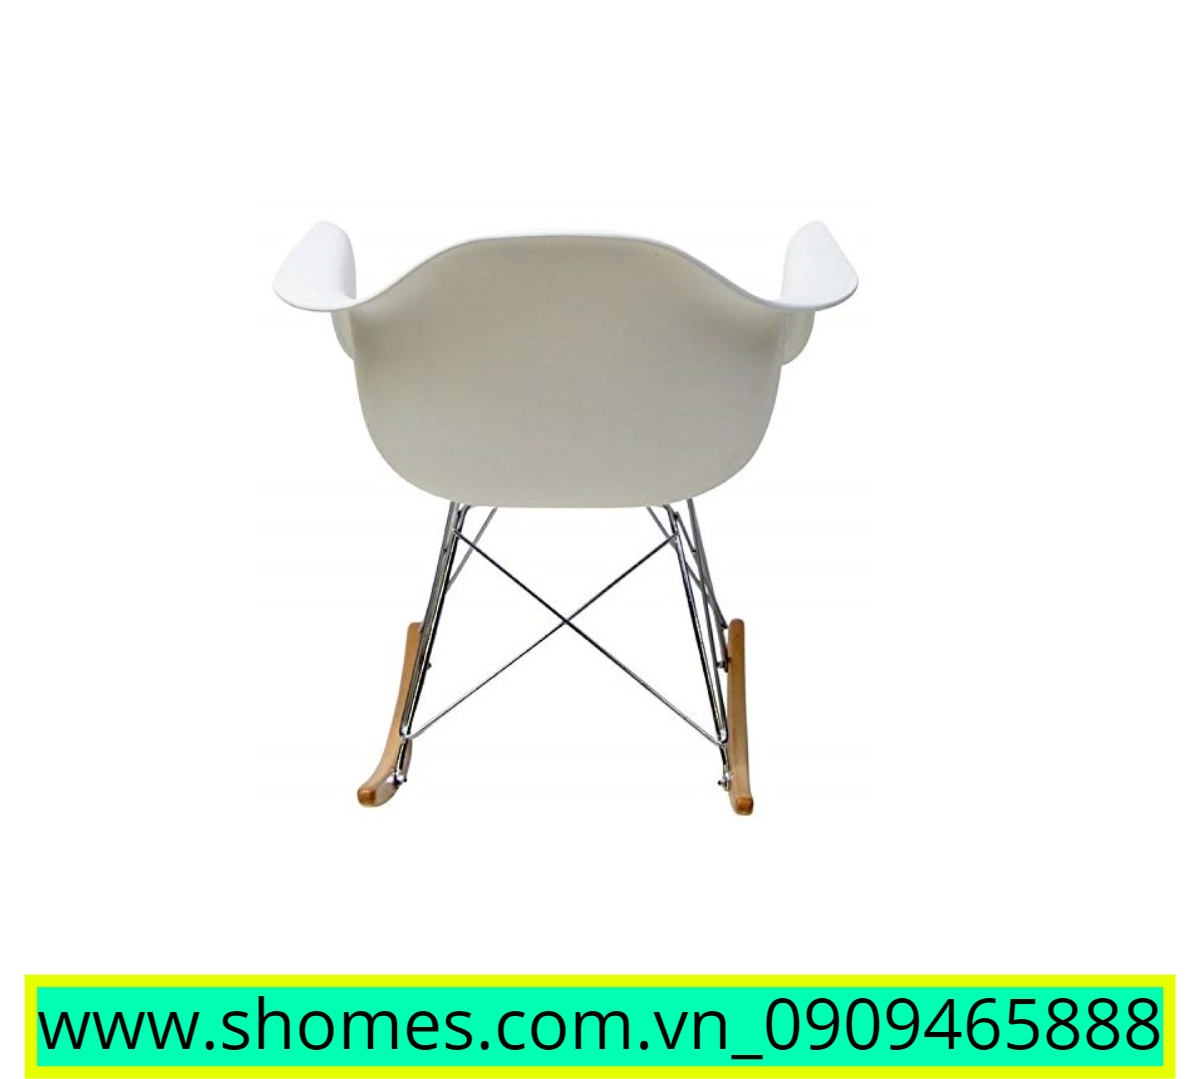 sản phẩm ghế, ghế giá rẻ, sản phẩm ghế giá rẻ, sản phẩm ghế trắng bập bênh, sản phẩm ghế nhựa trắng, sản phẩm ghế tựa trắng bệp bênh